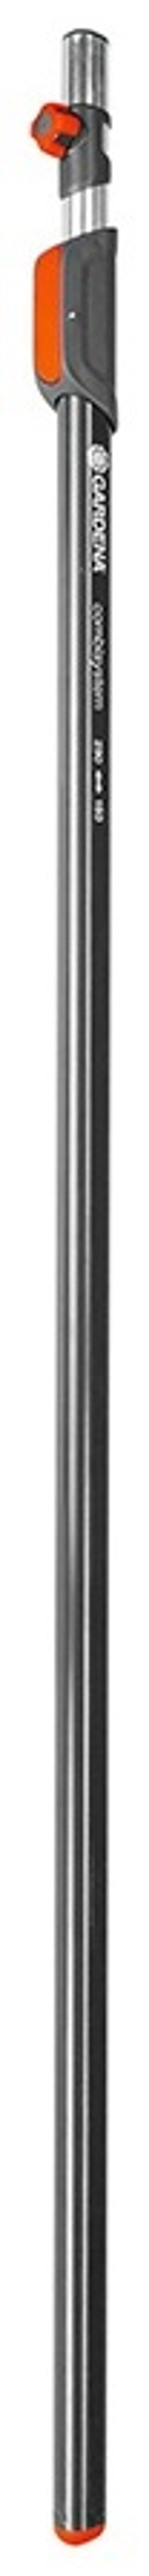 GARDENA телескопическая ручка 03720-20 290 см